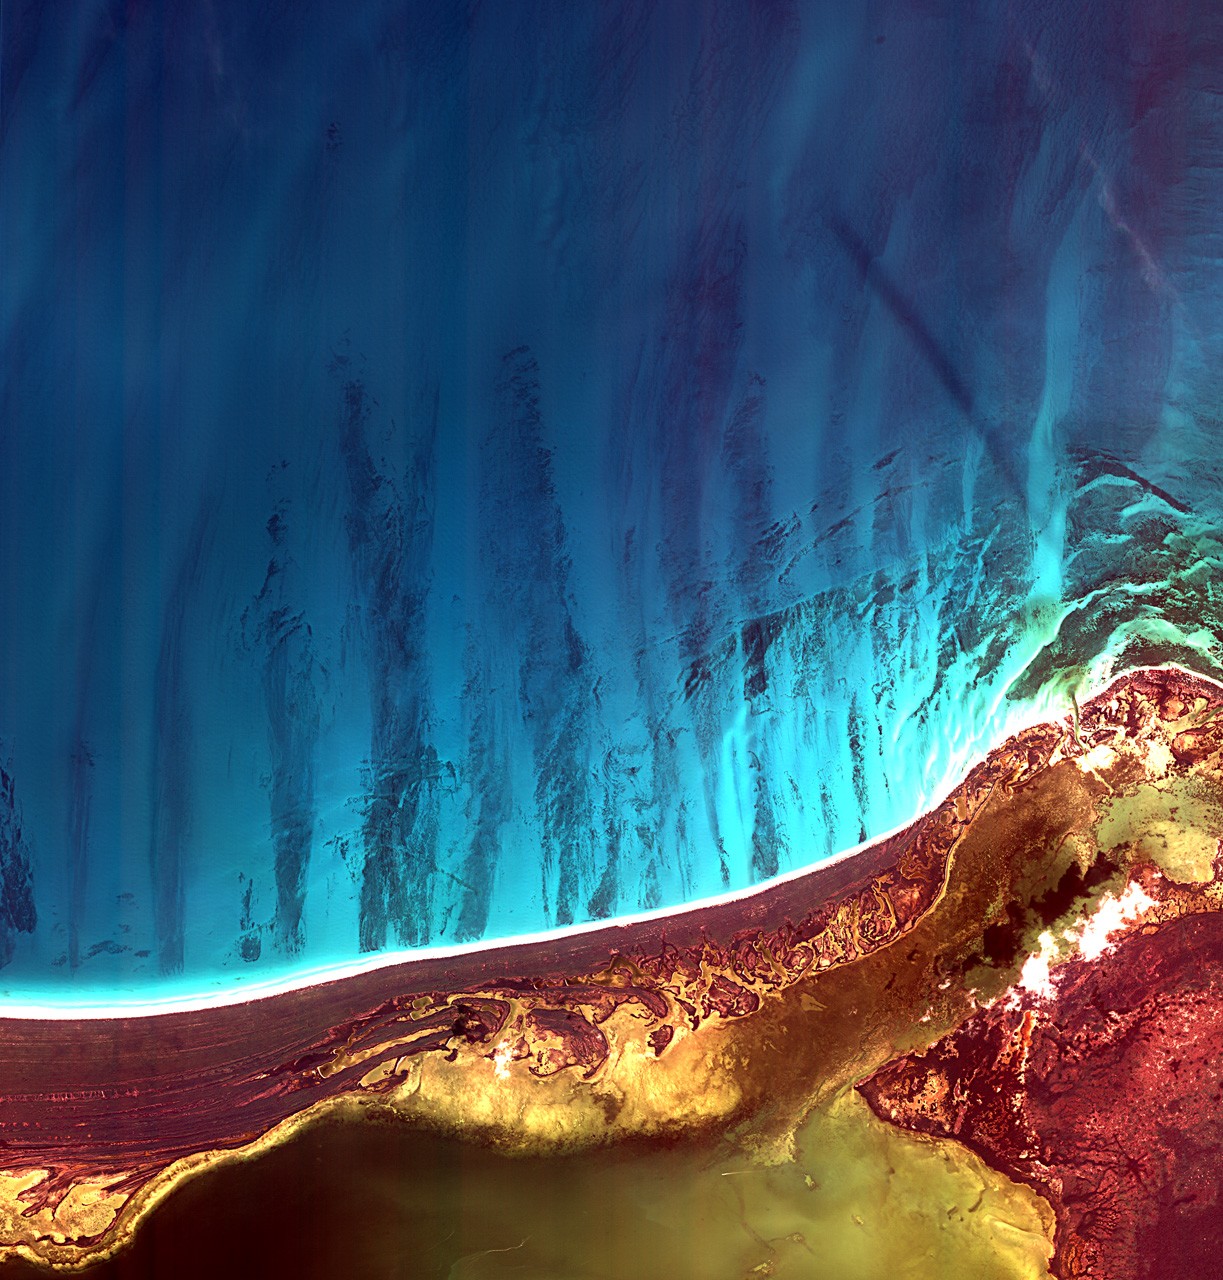 L’île Holbox et la lagune de Yalahau, à l’extrémité nord-est de la péninsule du Yucatan, au Mexique, sont au cœur de cette image réalisée par le satellite Kompsat 2. © Kari
